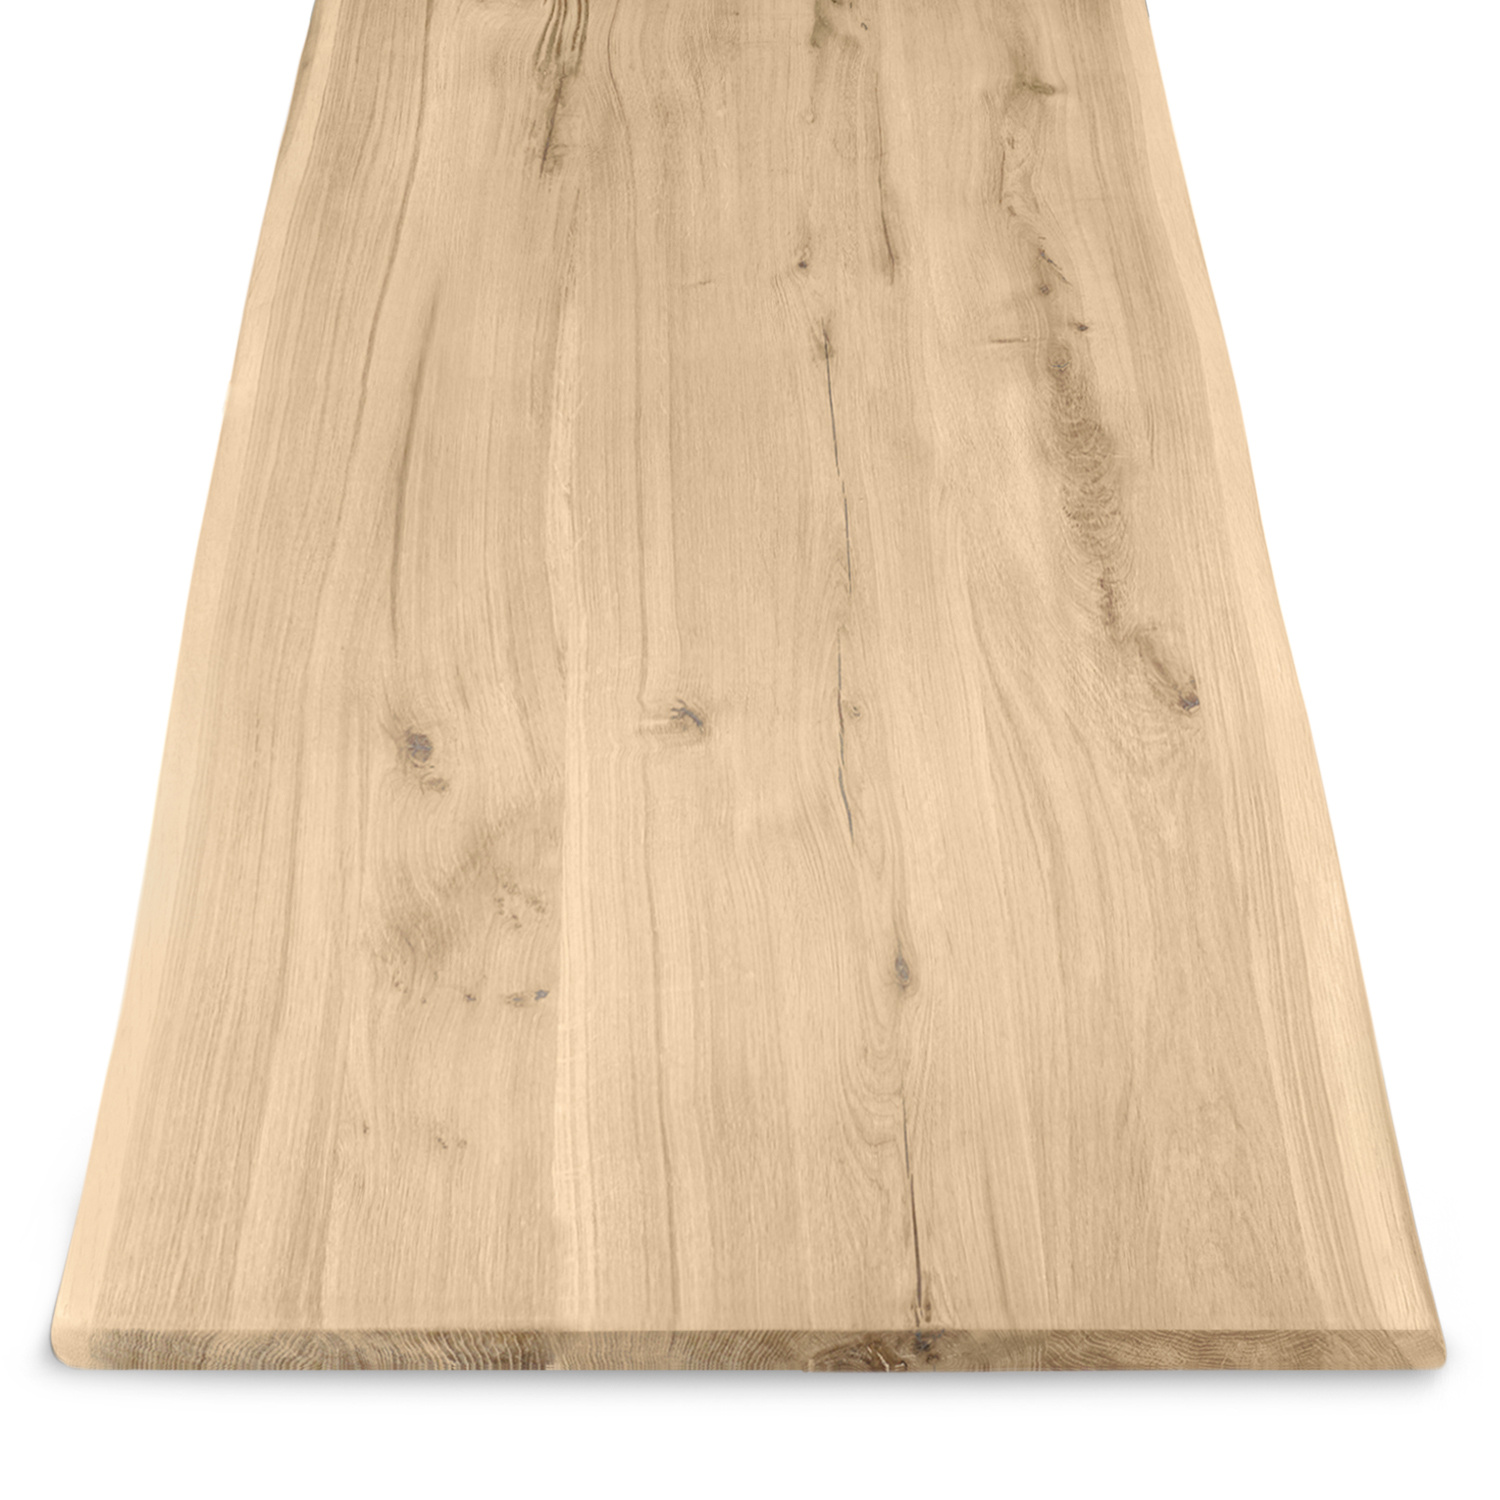  Eiken boomstam tafelblad op maat - 3 cm dik (1-laag) - met boomstam rand / waankant - extra rustiek Europees eikenhout - met extra brede lamellen (circa 14-20 cm) - verlijmd kd 8-12% - 40-105x80-300 cm